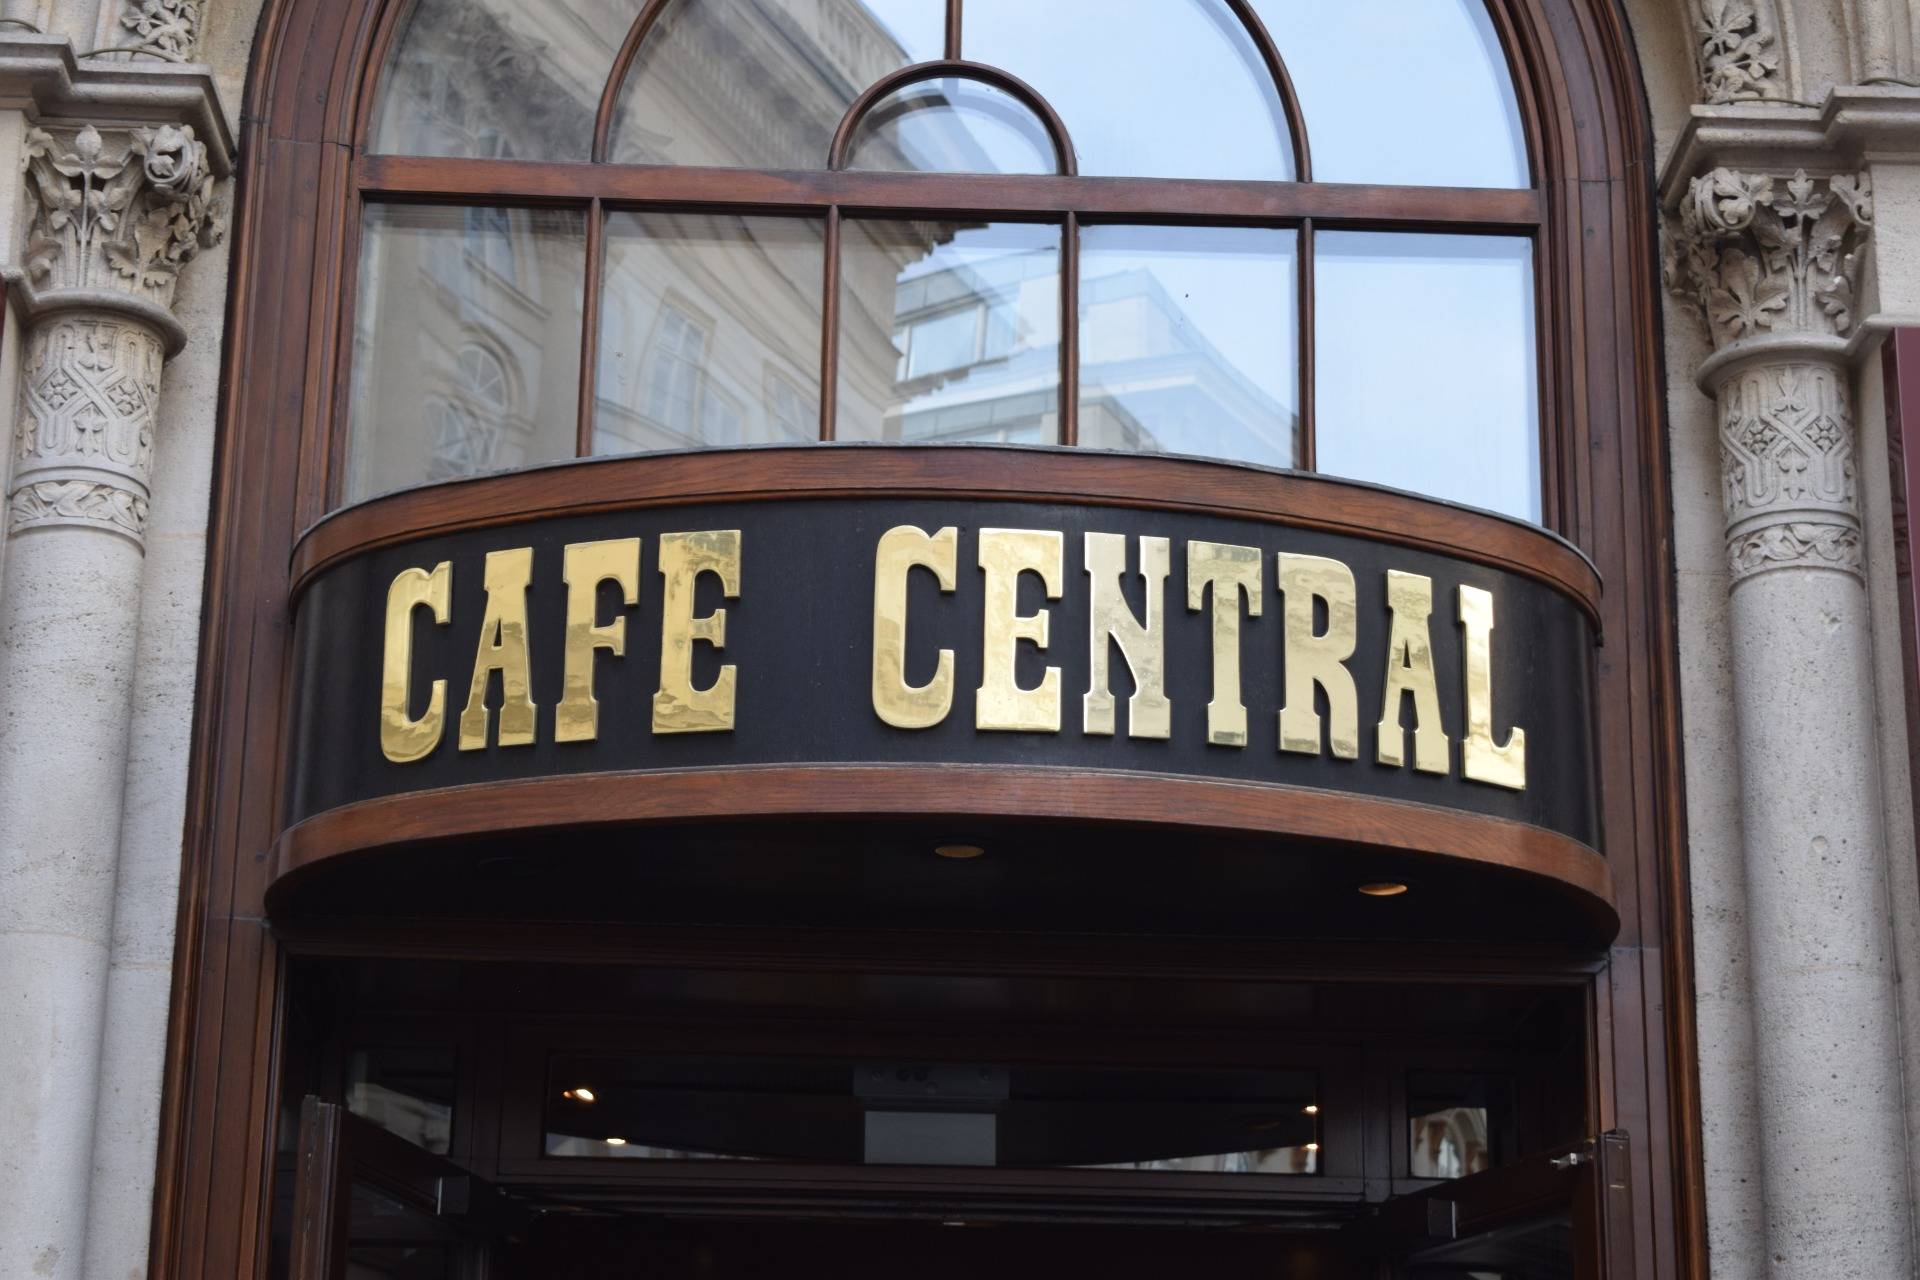 Cafe Central!